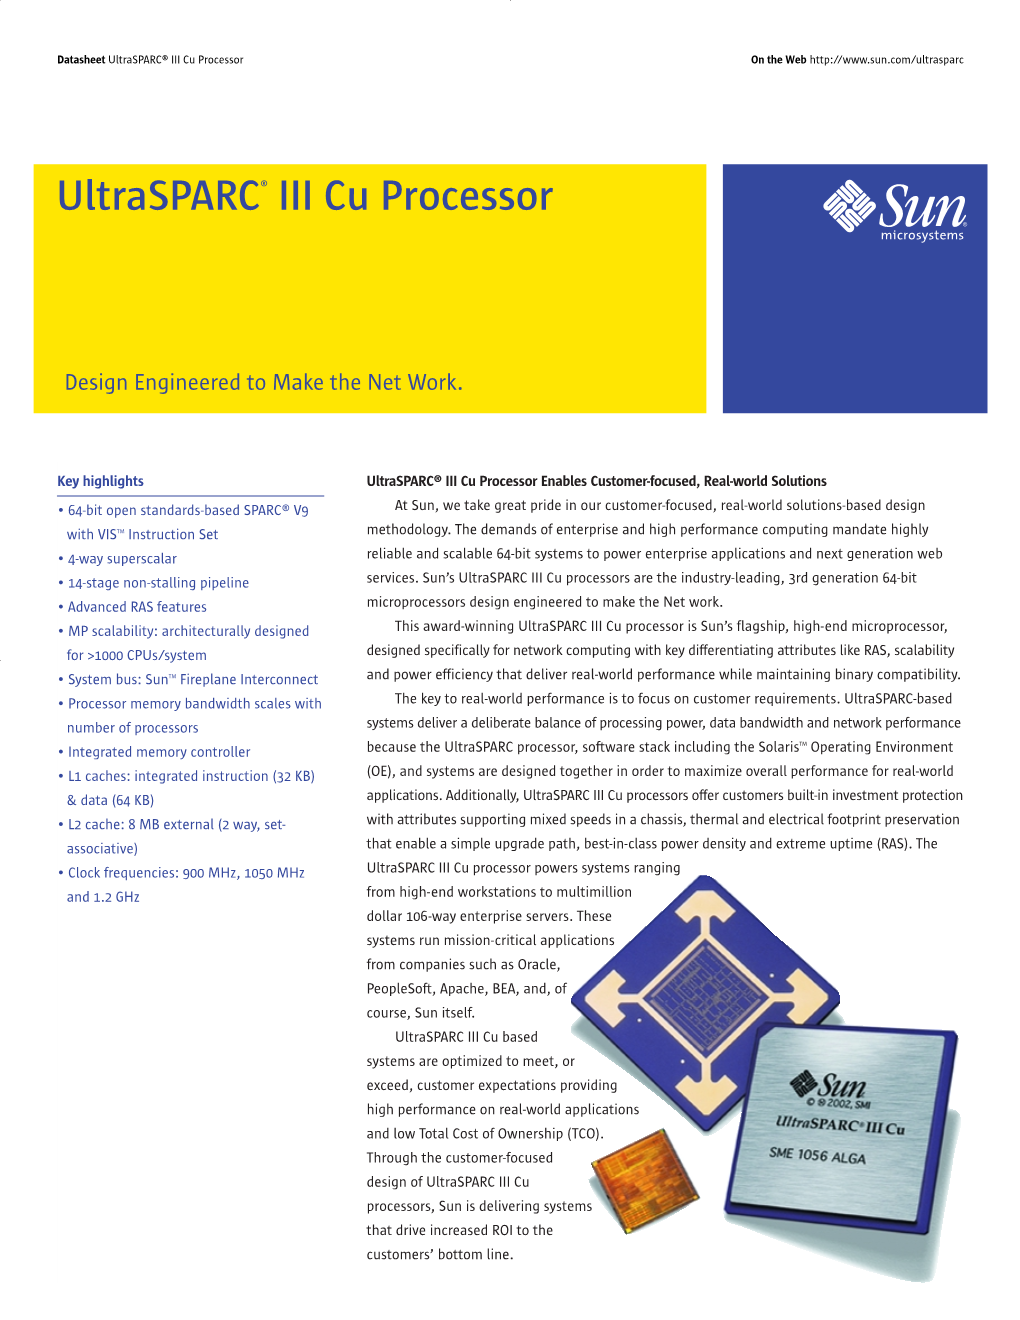 Ultrasparc III Cu Processor Product Bulletin